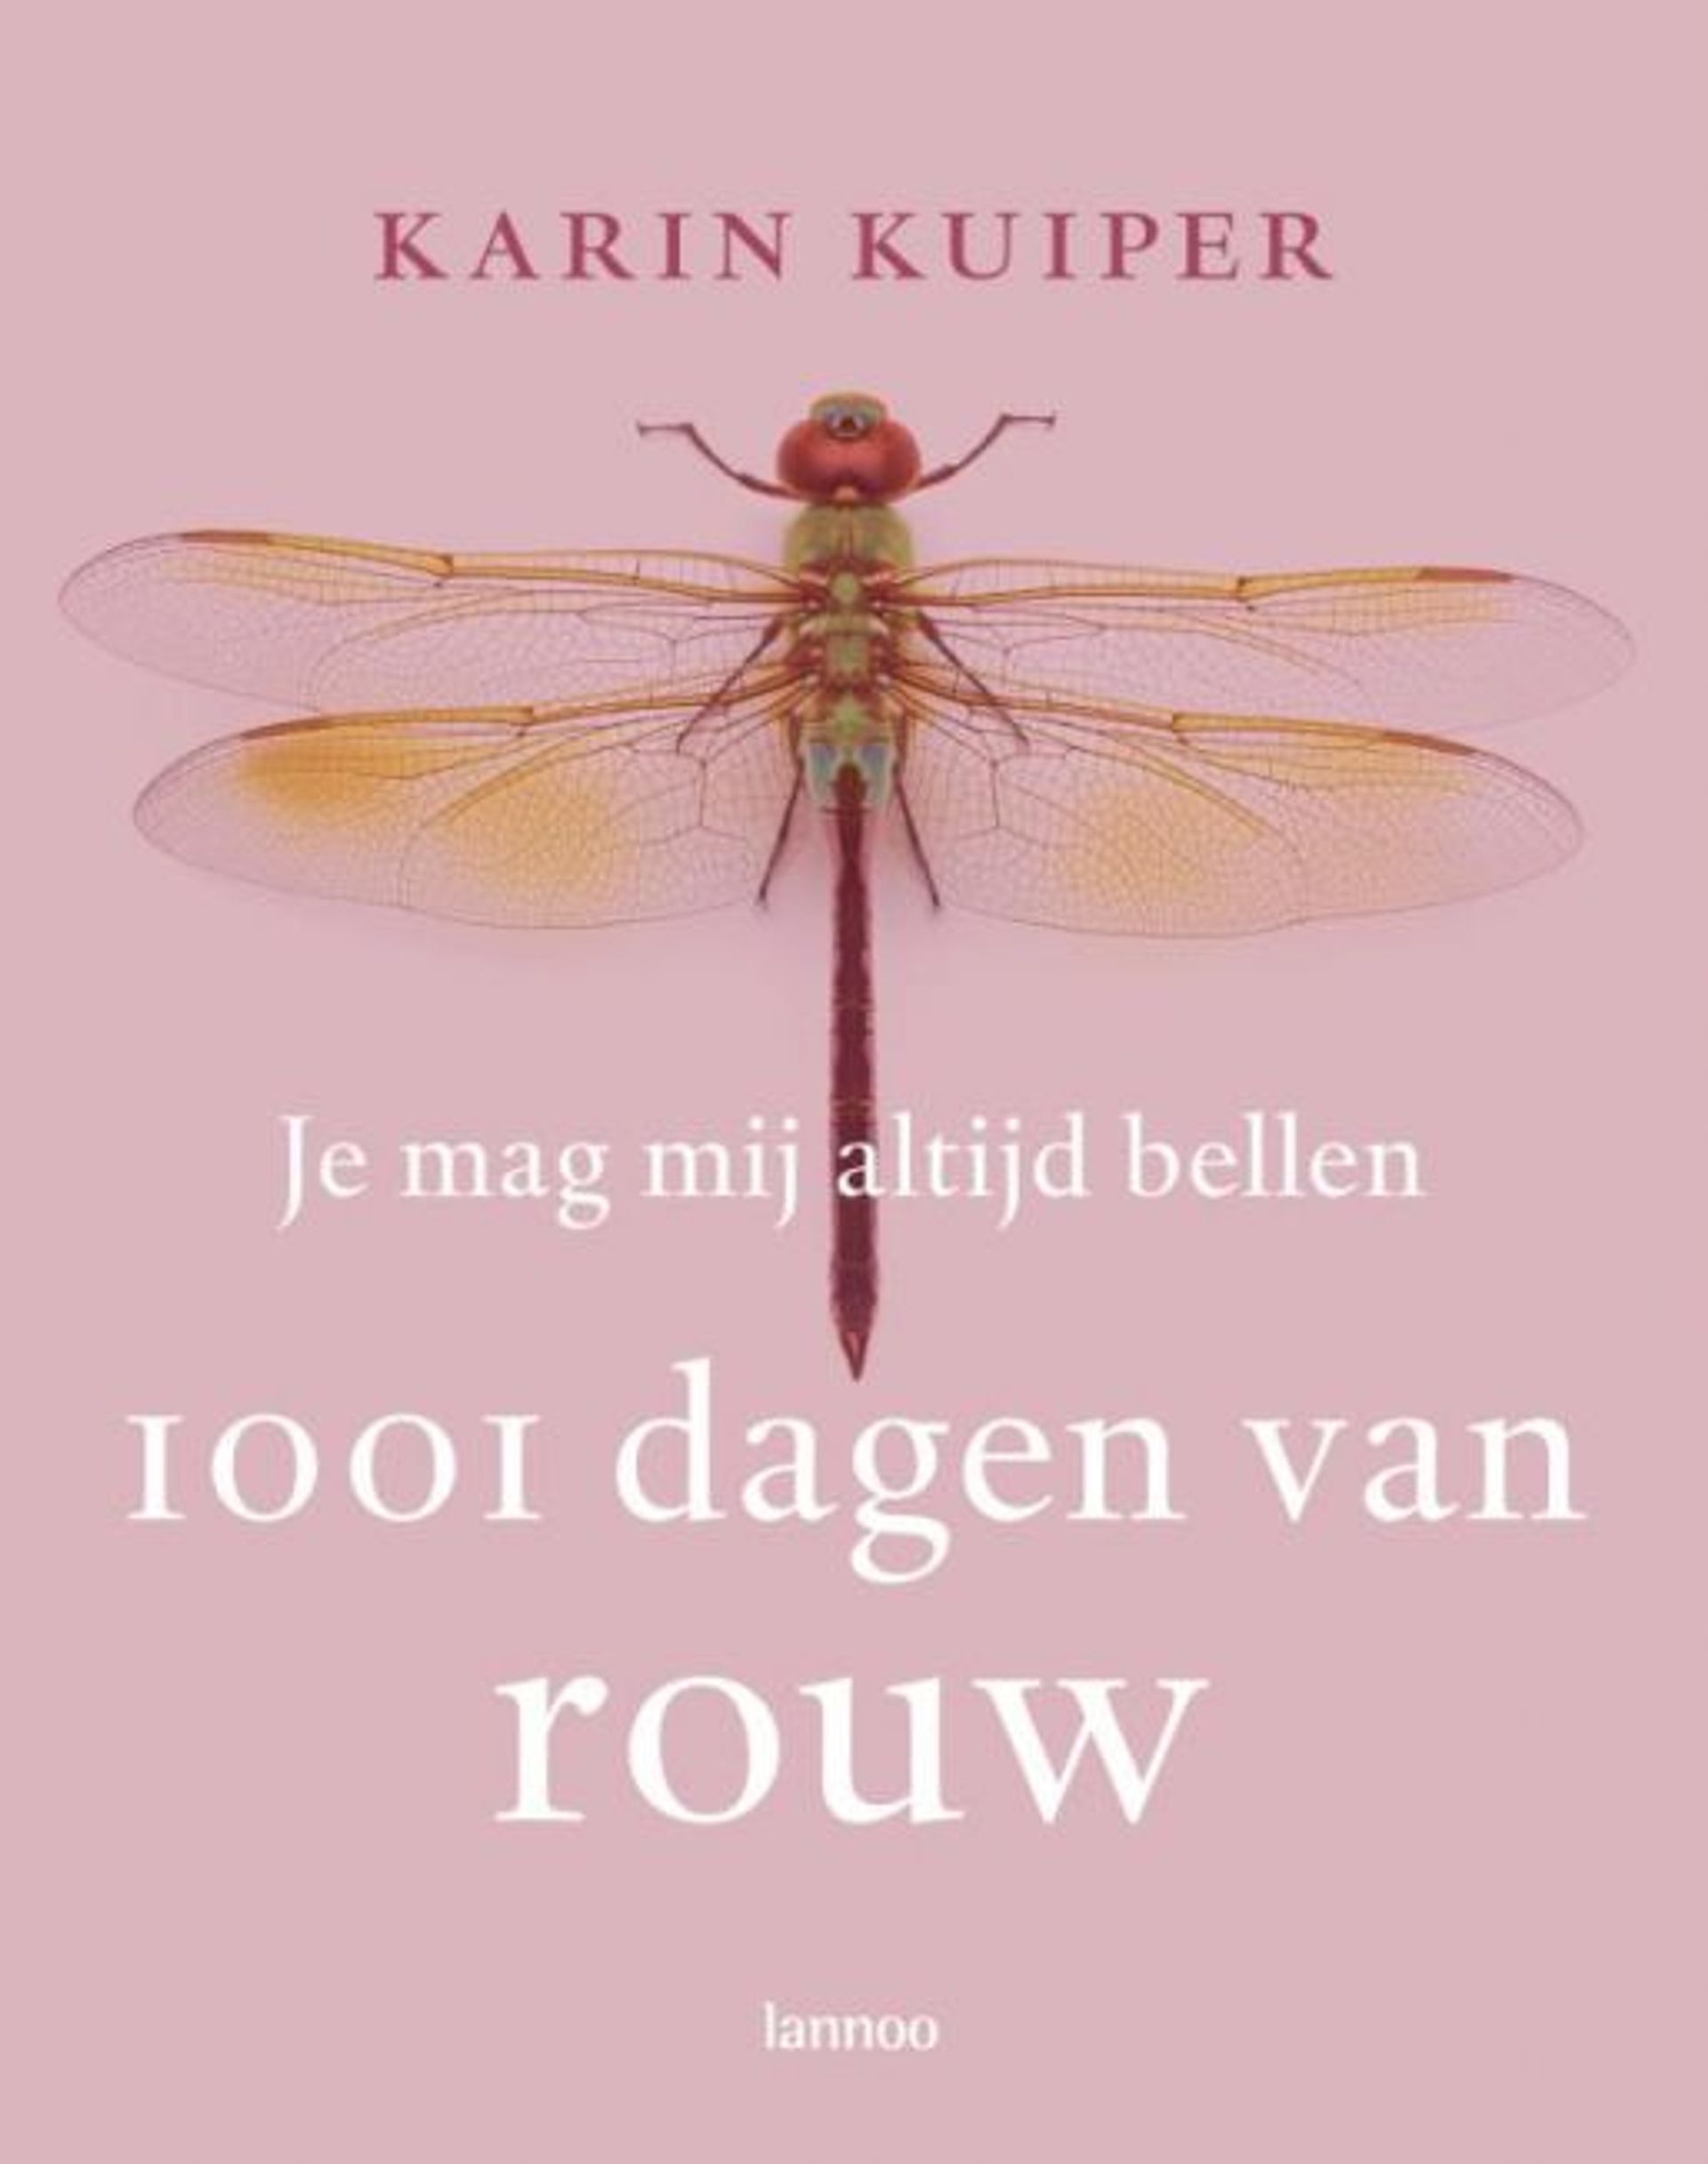 Karin Kuiper – 1001 dagen van rouw